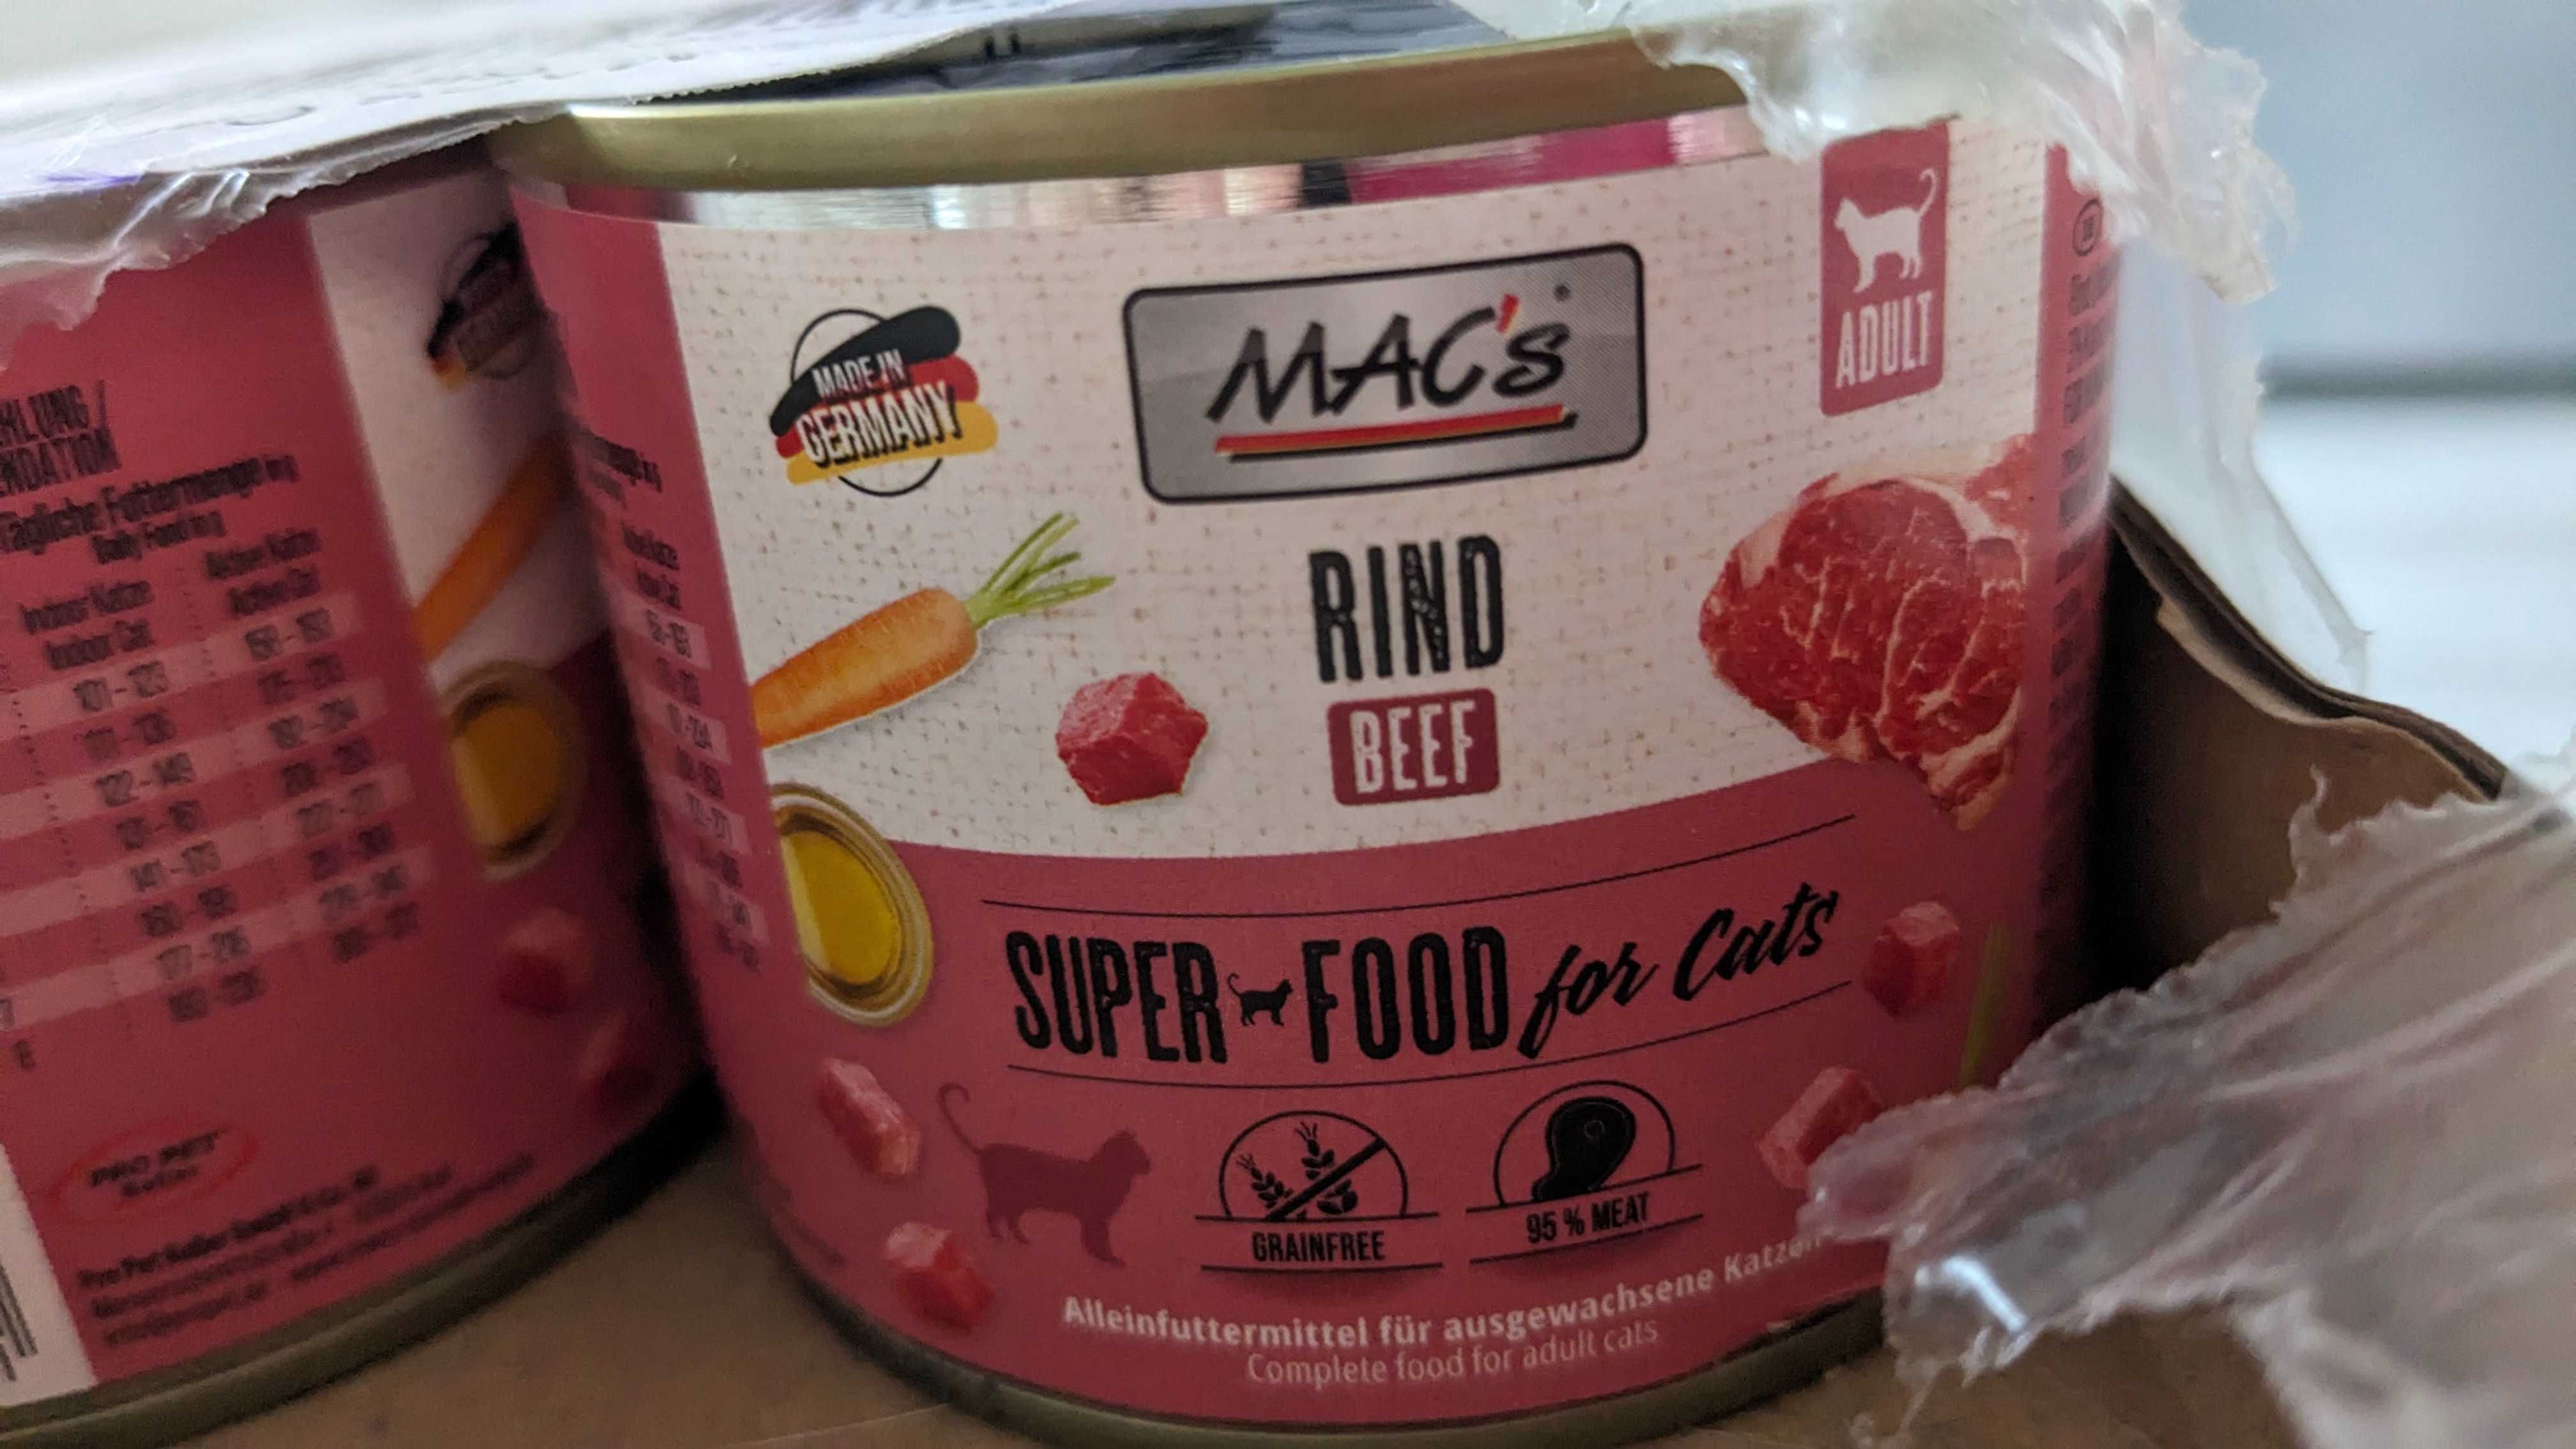 Mac's wołowina RIND BEEF super food